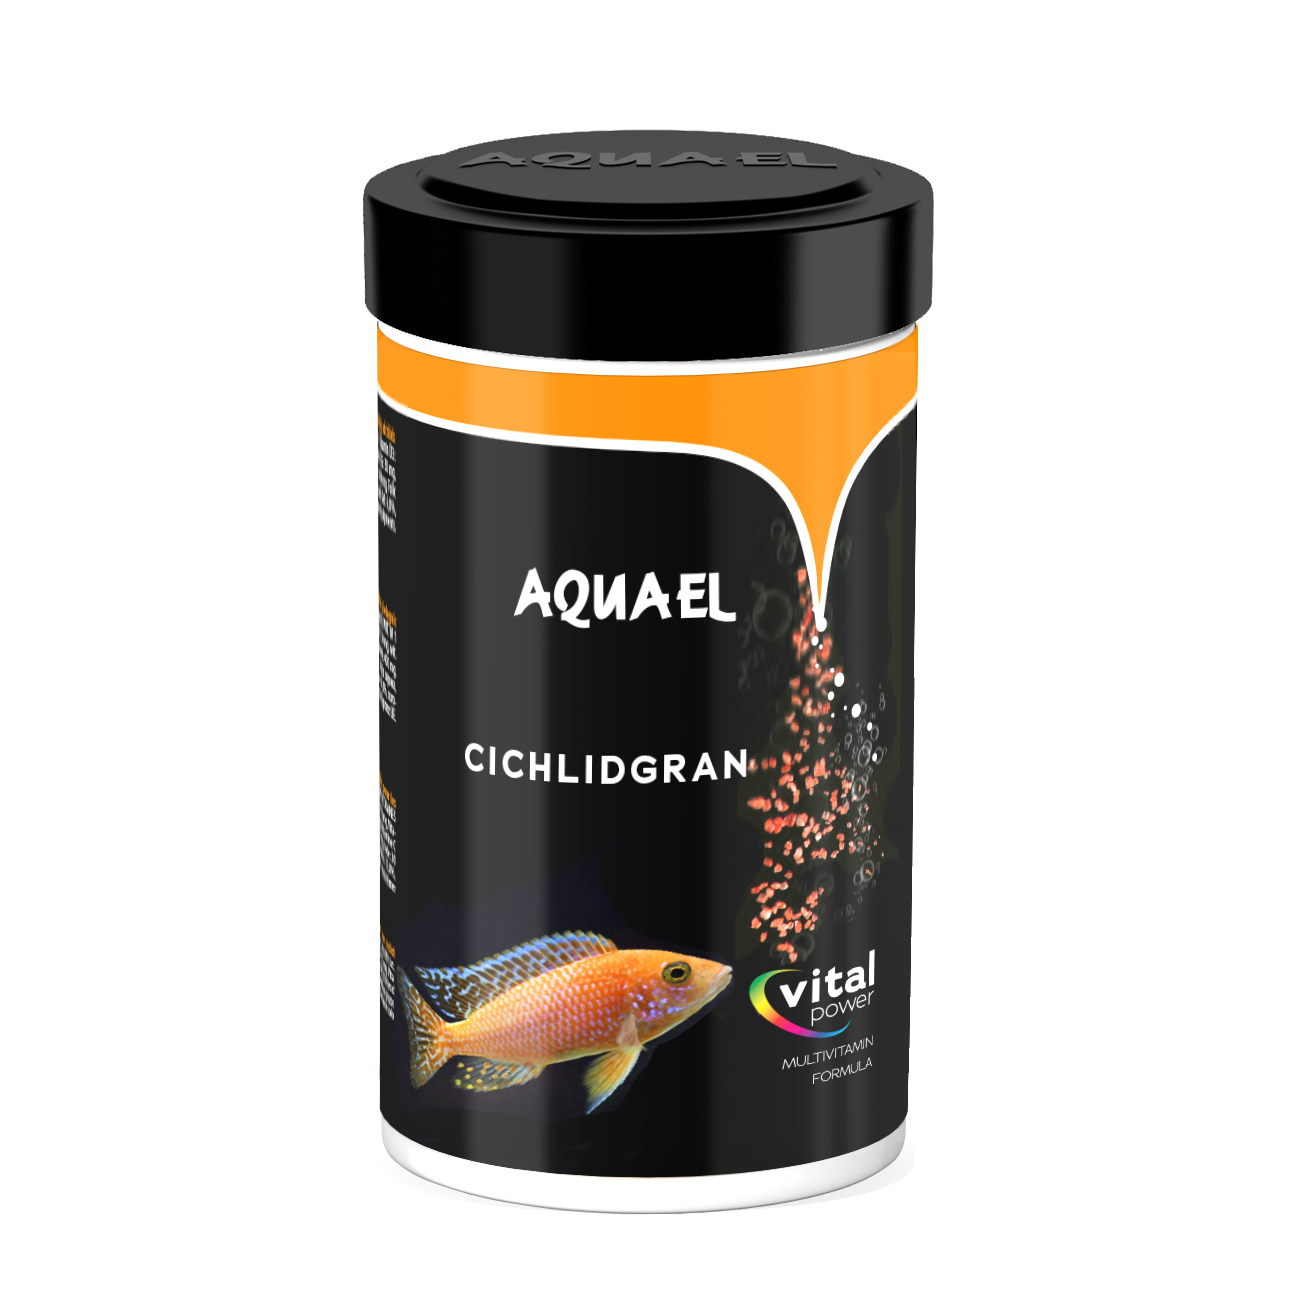 Aquael fish food Cichlidgran 250ml